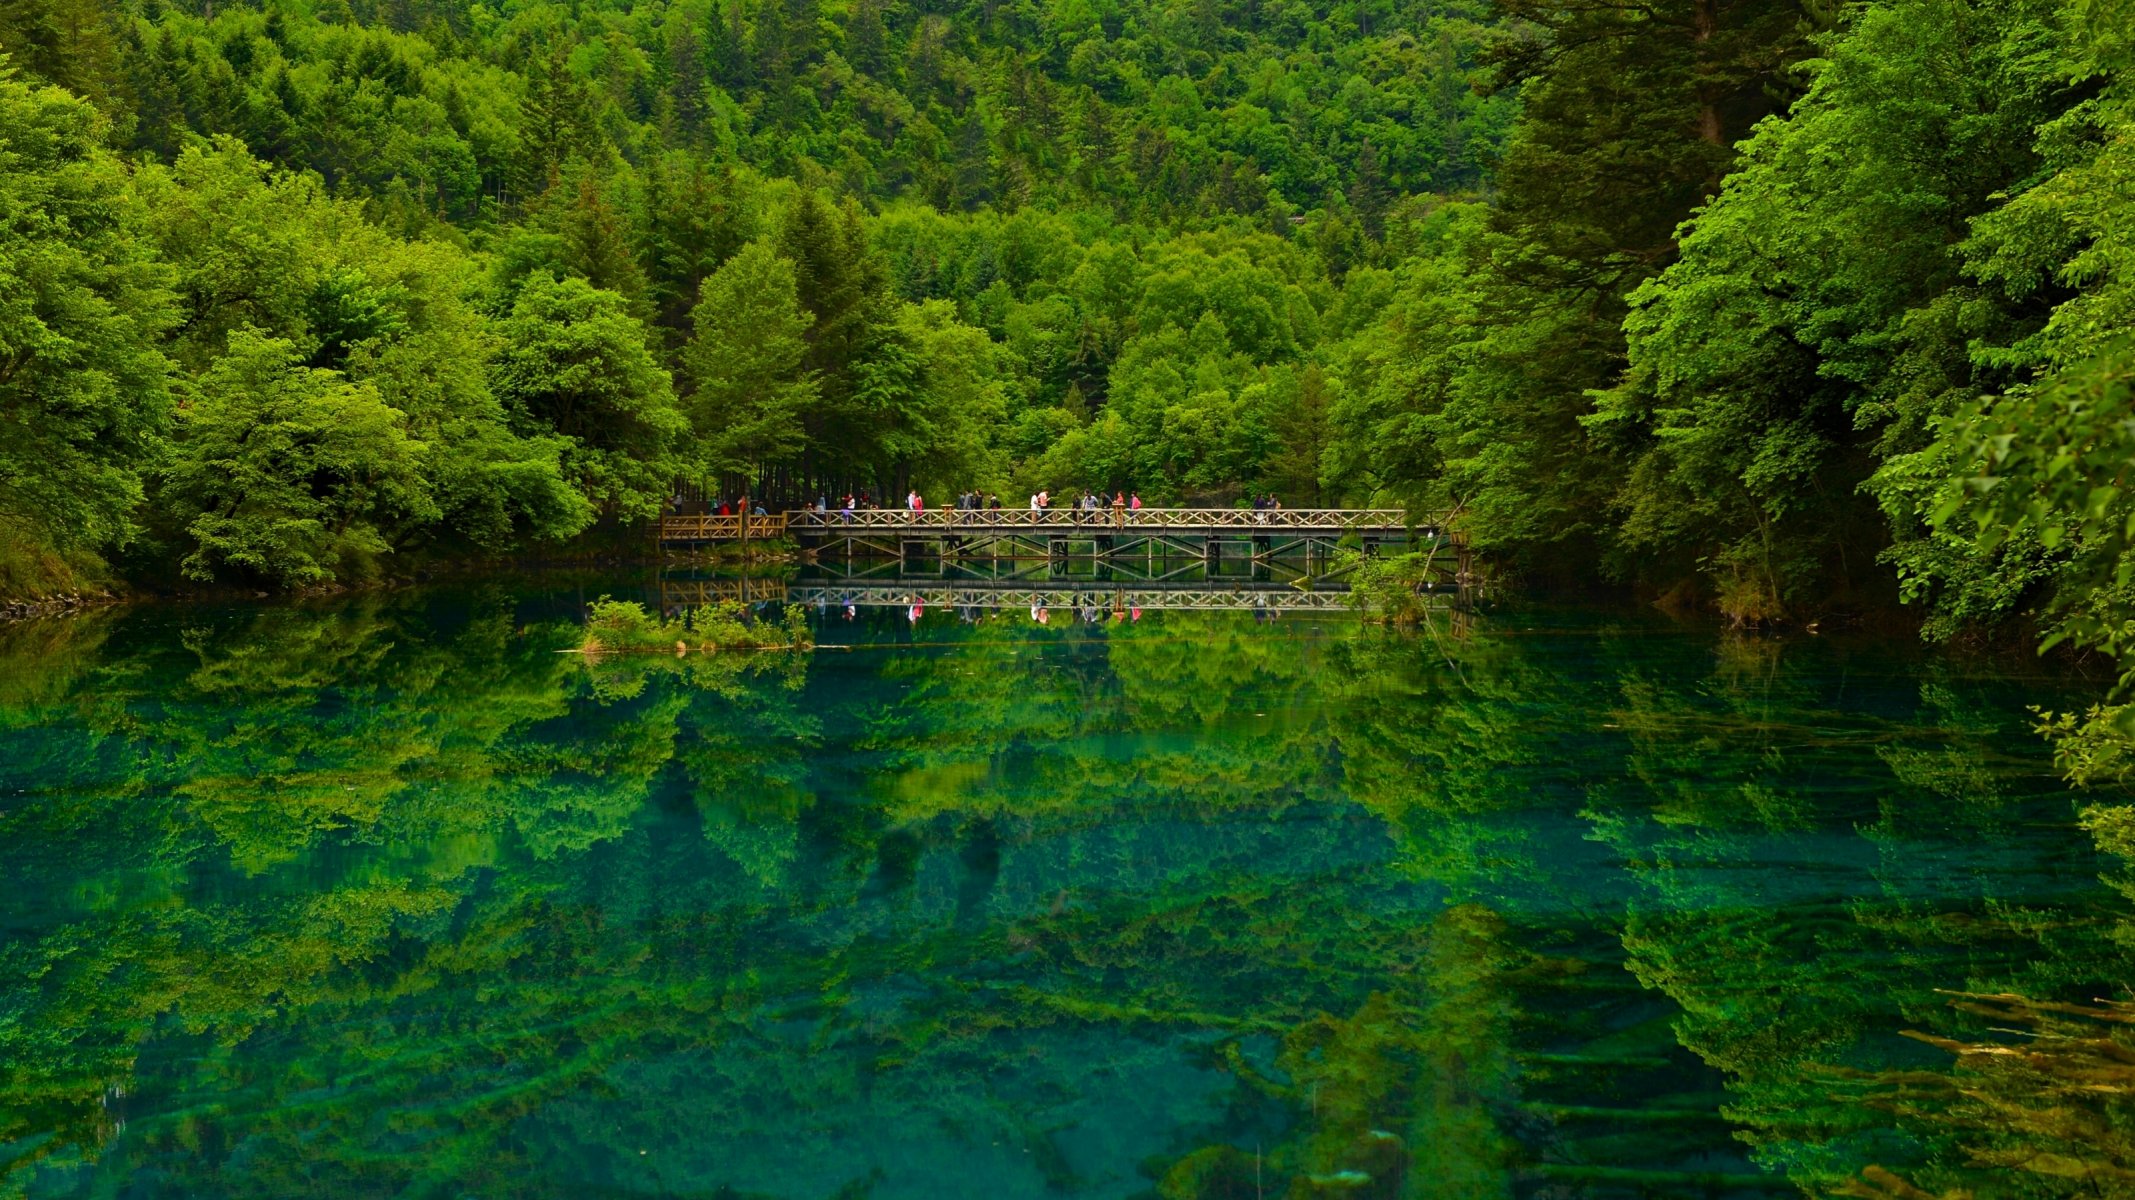 Hd Wallpaper Jiuzhaigou Sichuan China Reserve Lake Bridge Forest Reflection